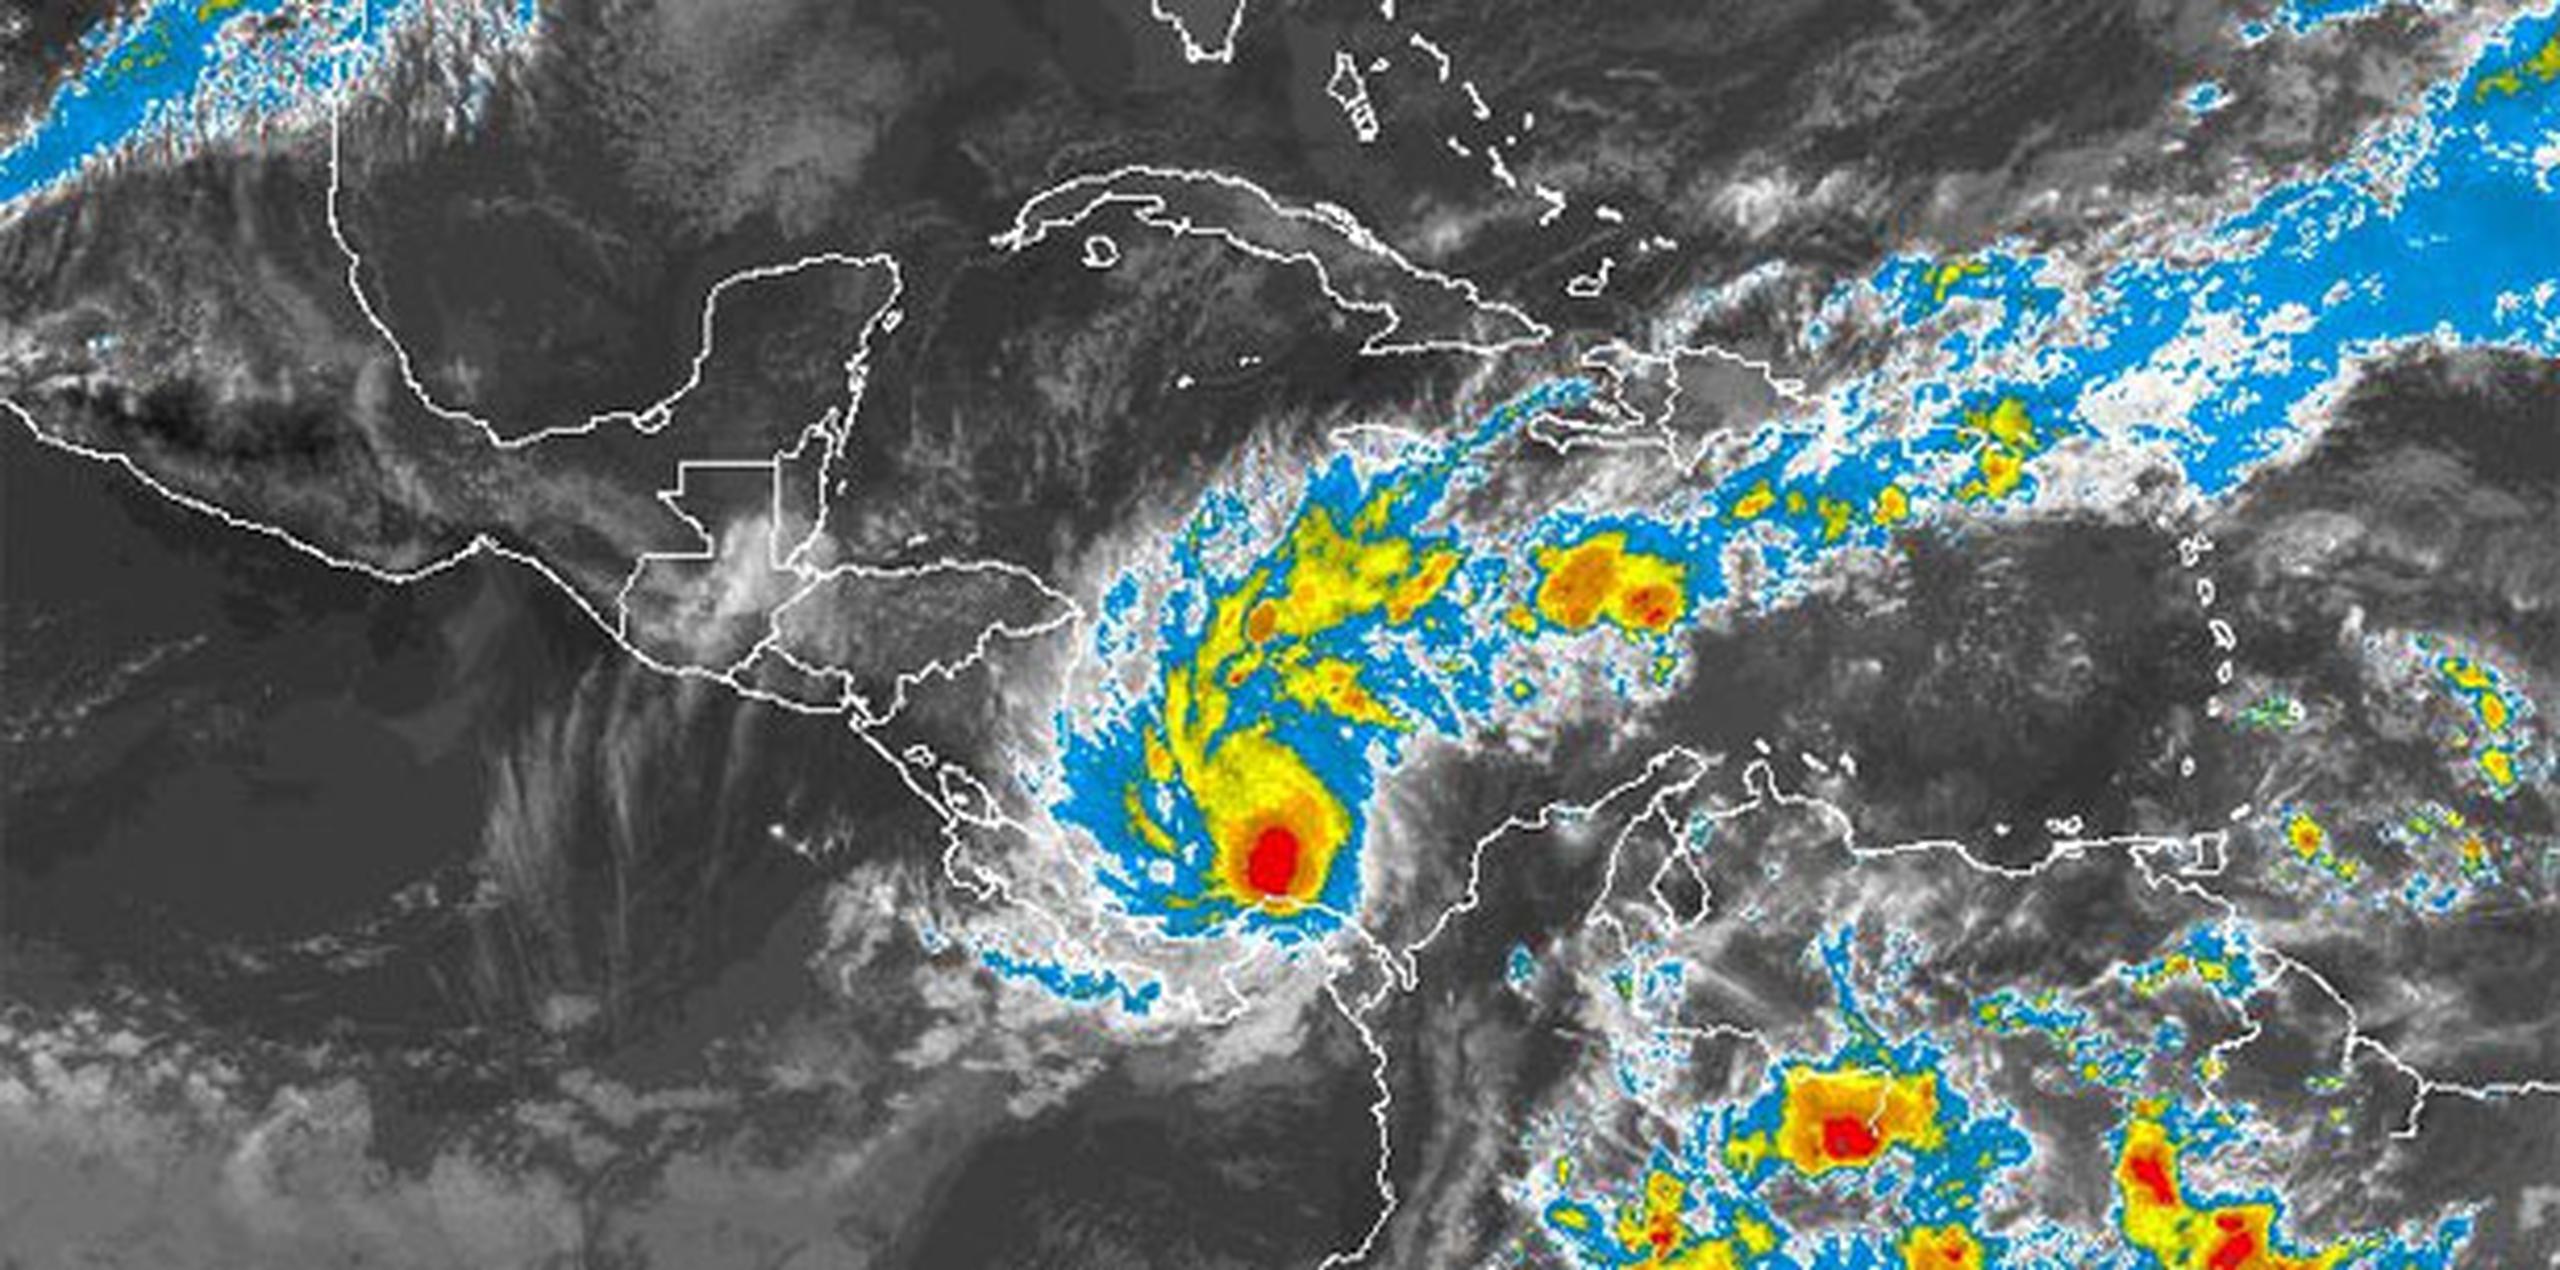 La Comisión Nacional de Emergencia de Costa Rica anunció la evacuación de unas 4,000 personas de las comunidades del Caribe norte. (NOAA)